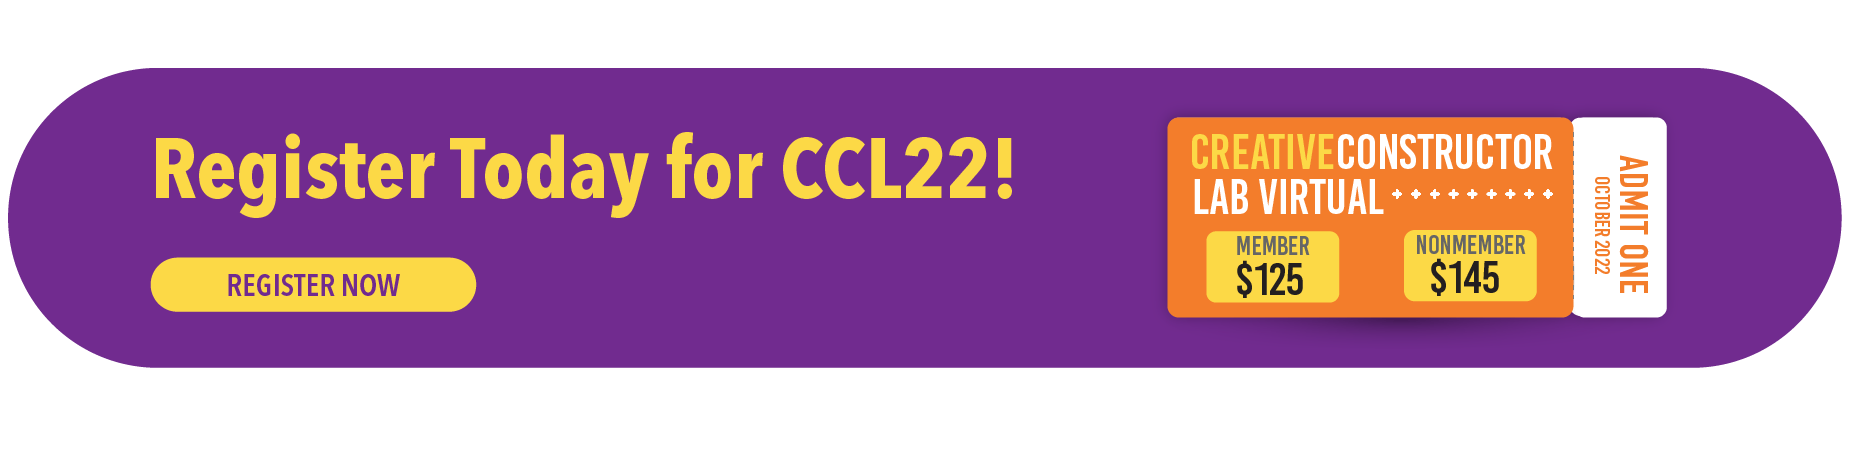 Register for CCL